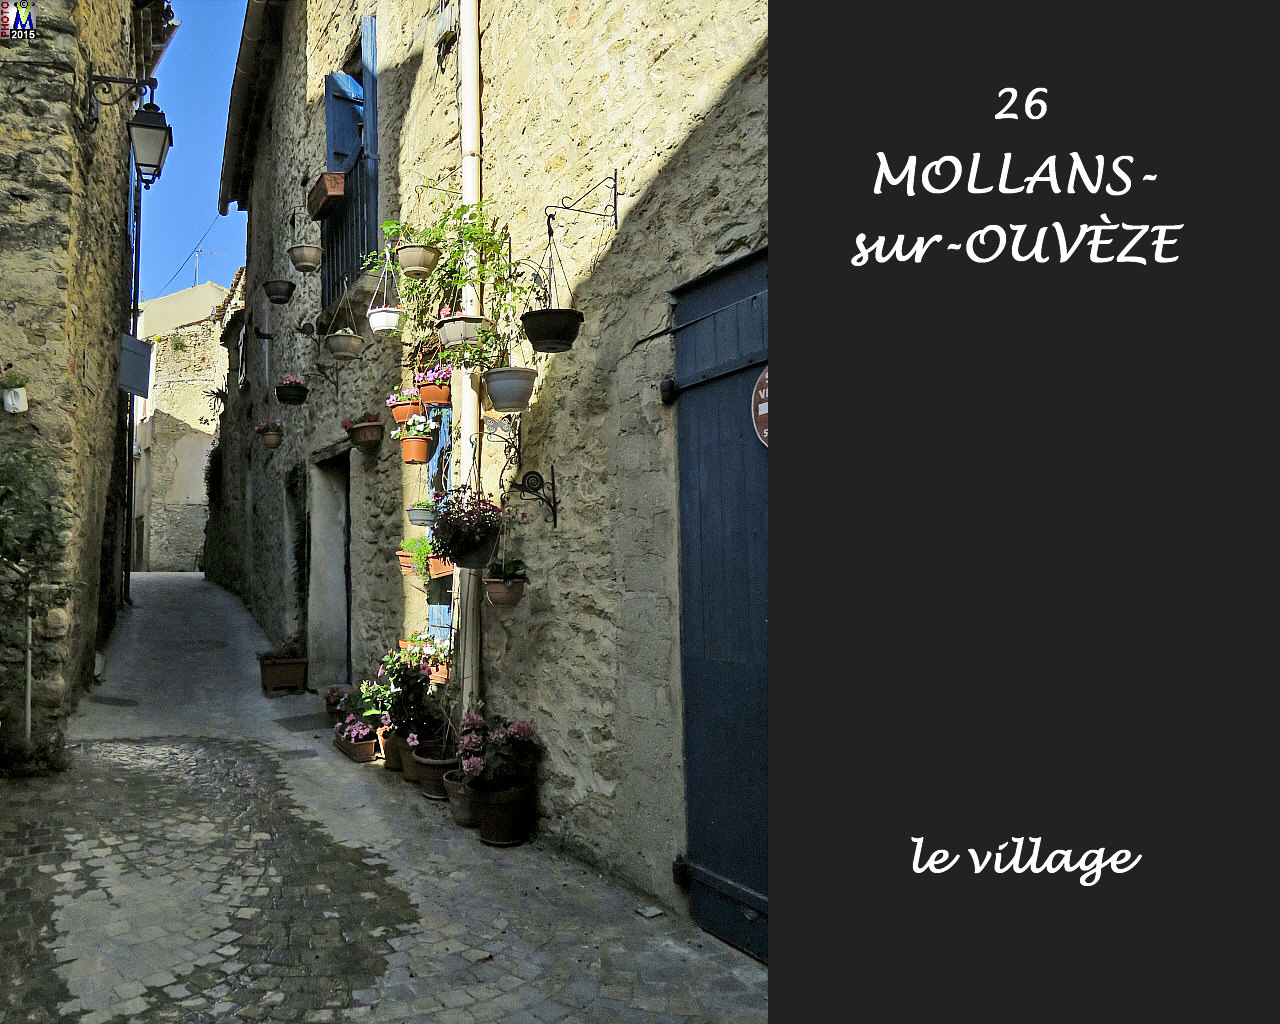 26MOLLANS-OUVEZE_village_150.jpg